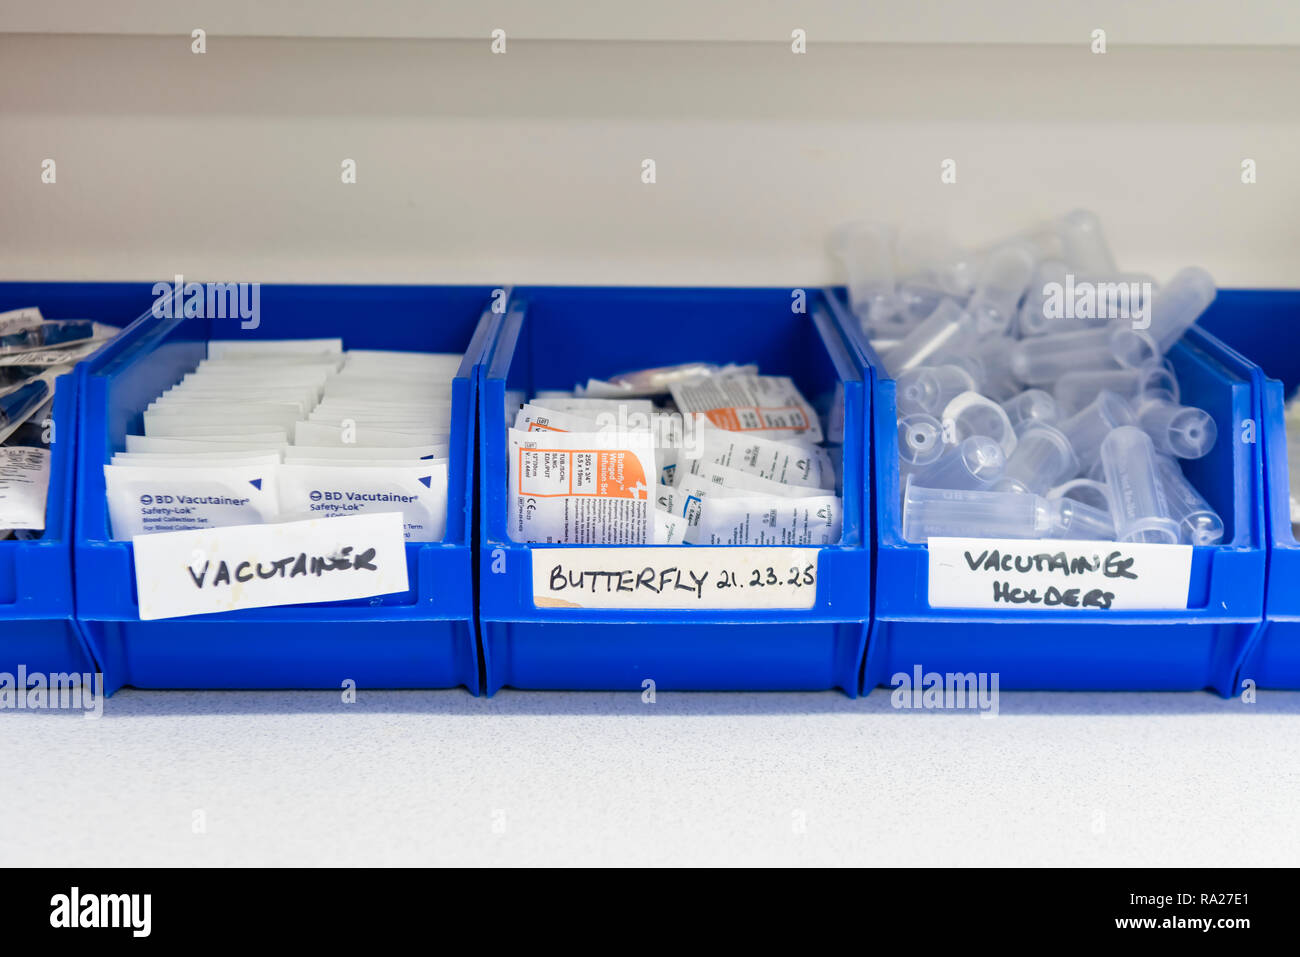 Baignoires en plastique contenant de l'équipement médical, y compris les aiguilles papillon, tube vacutainer, torches etc pour prendre des échantillons de sang dans une salle de traitement de l'hôpital Banque D'Images